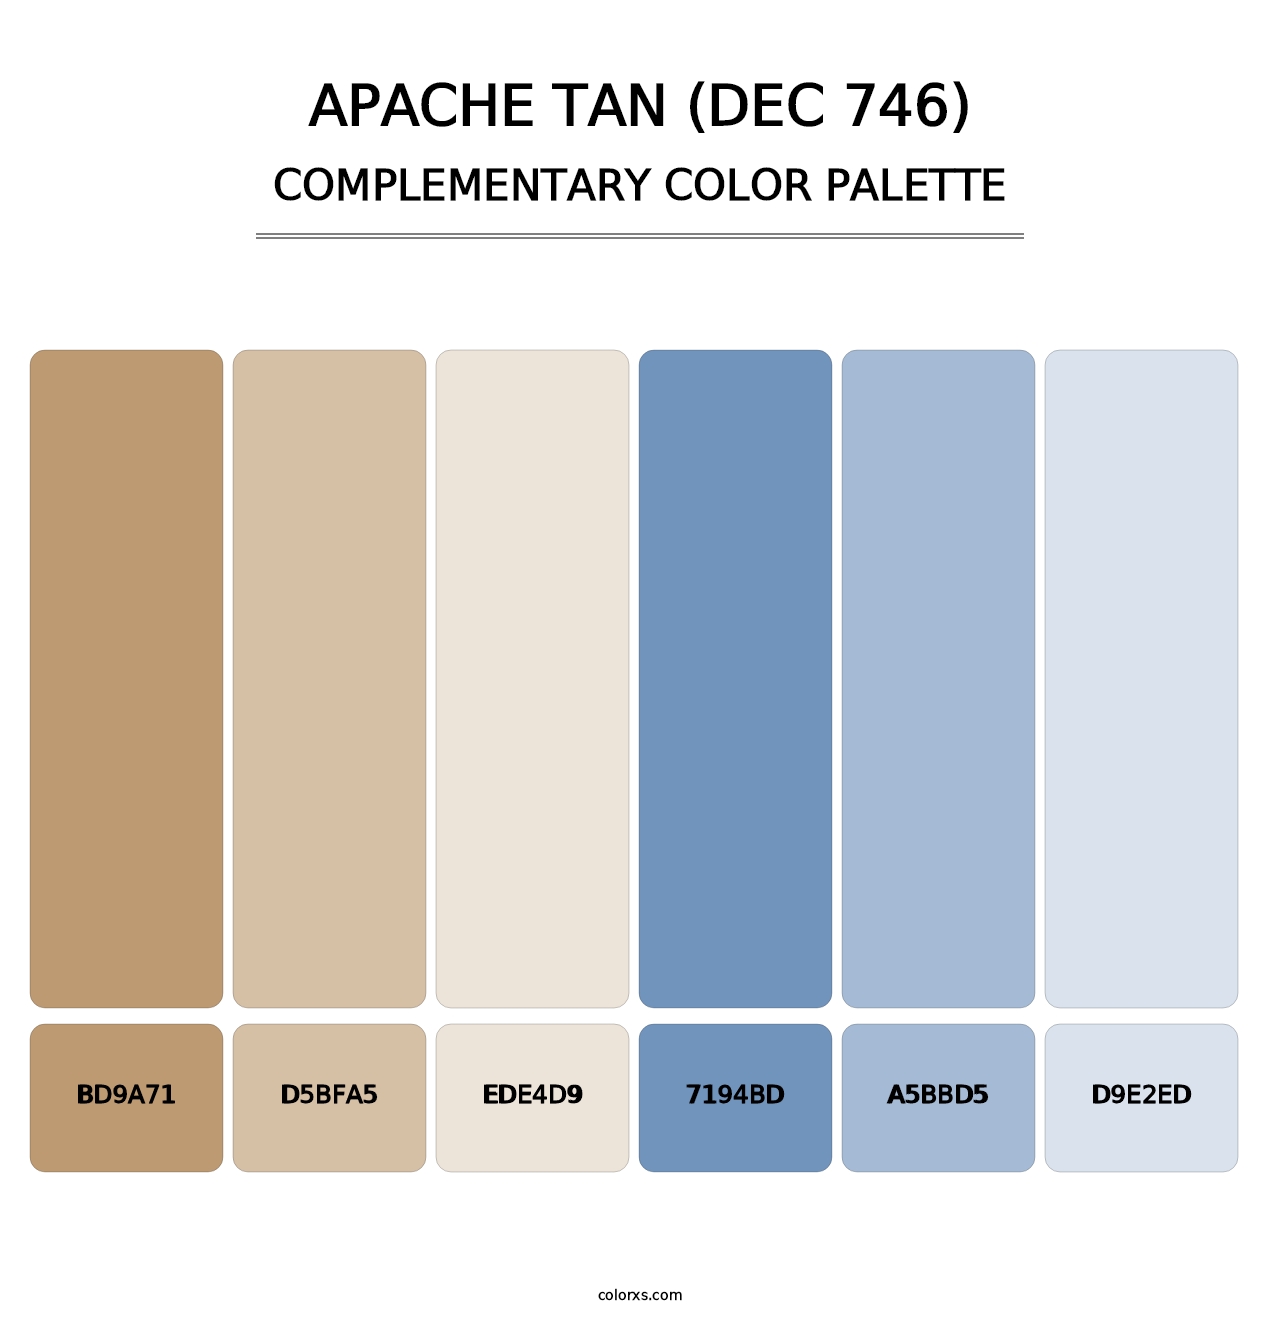 Apache Tan (DEC 746) - Complementary Color Palette